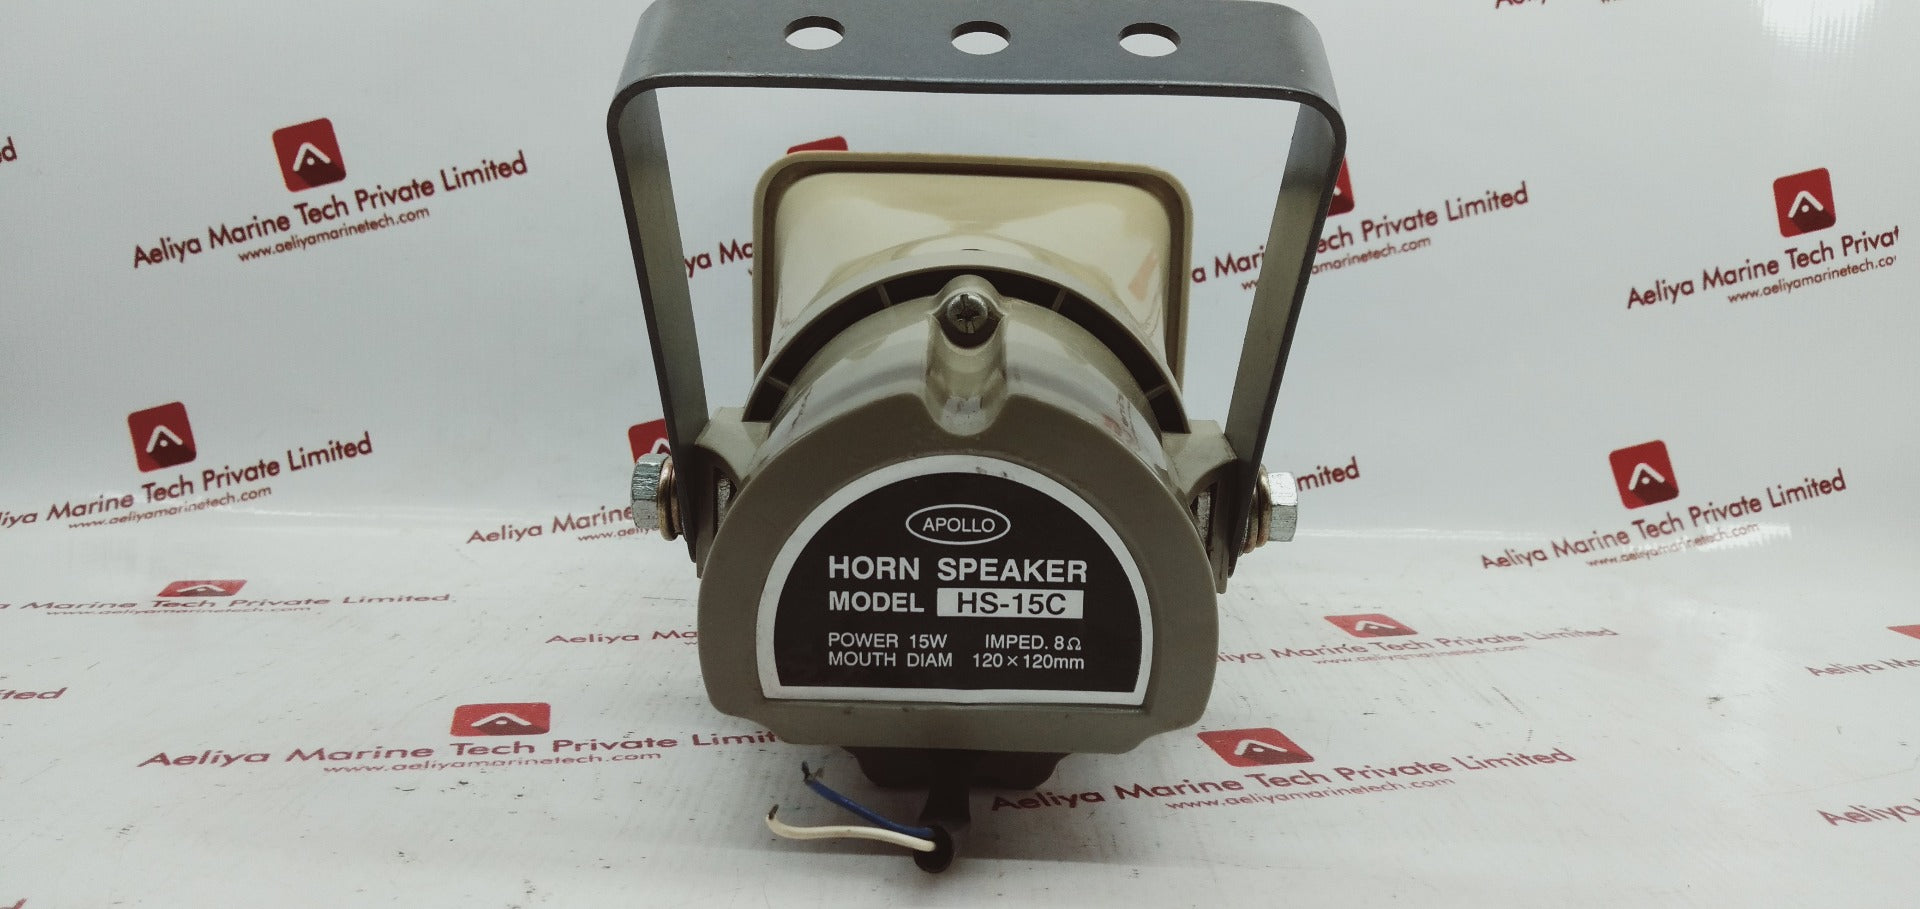 Apollo hs-15c horn speaker